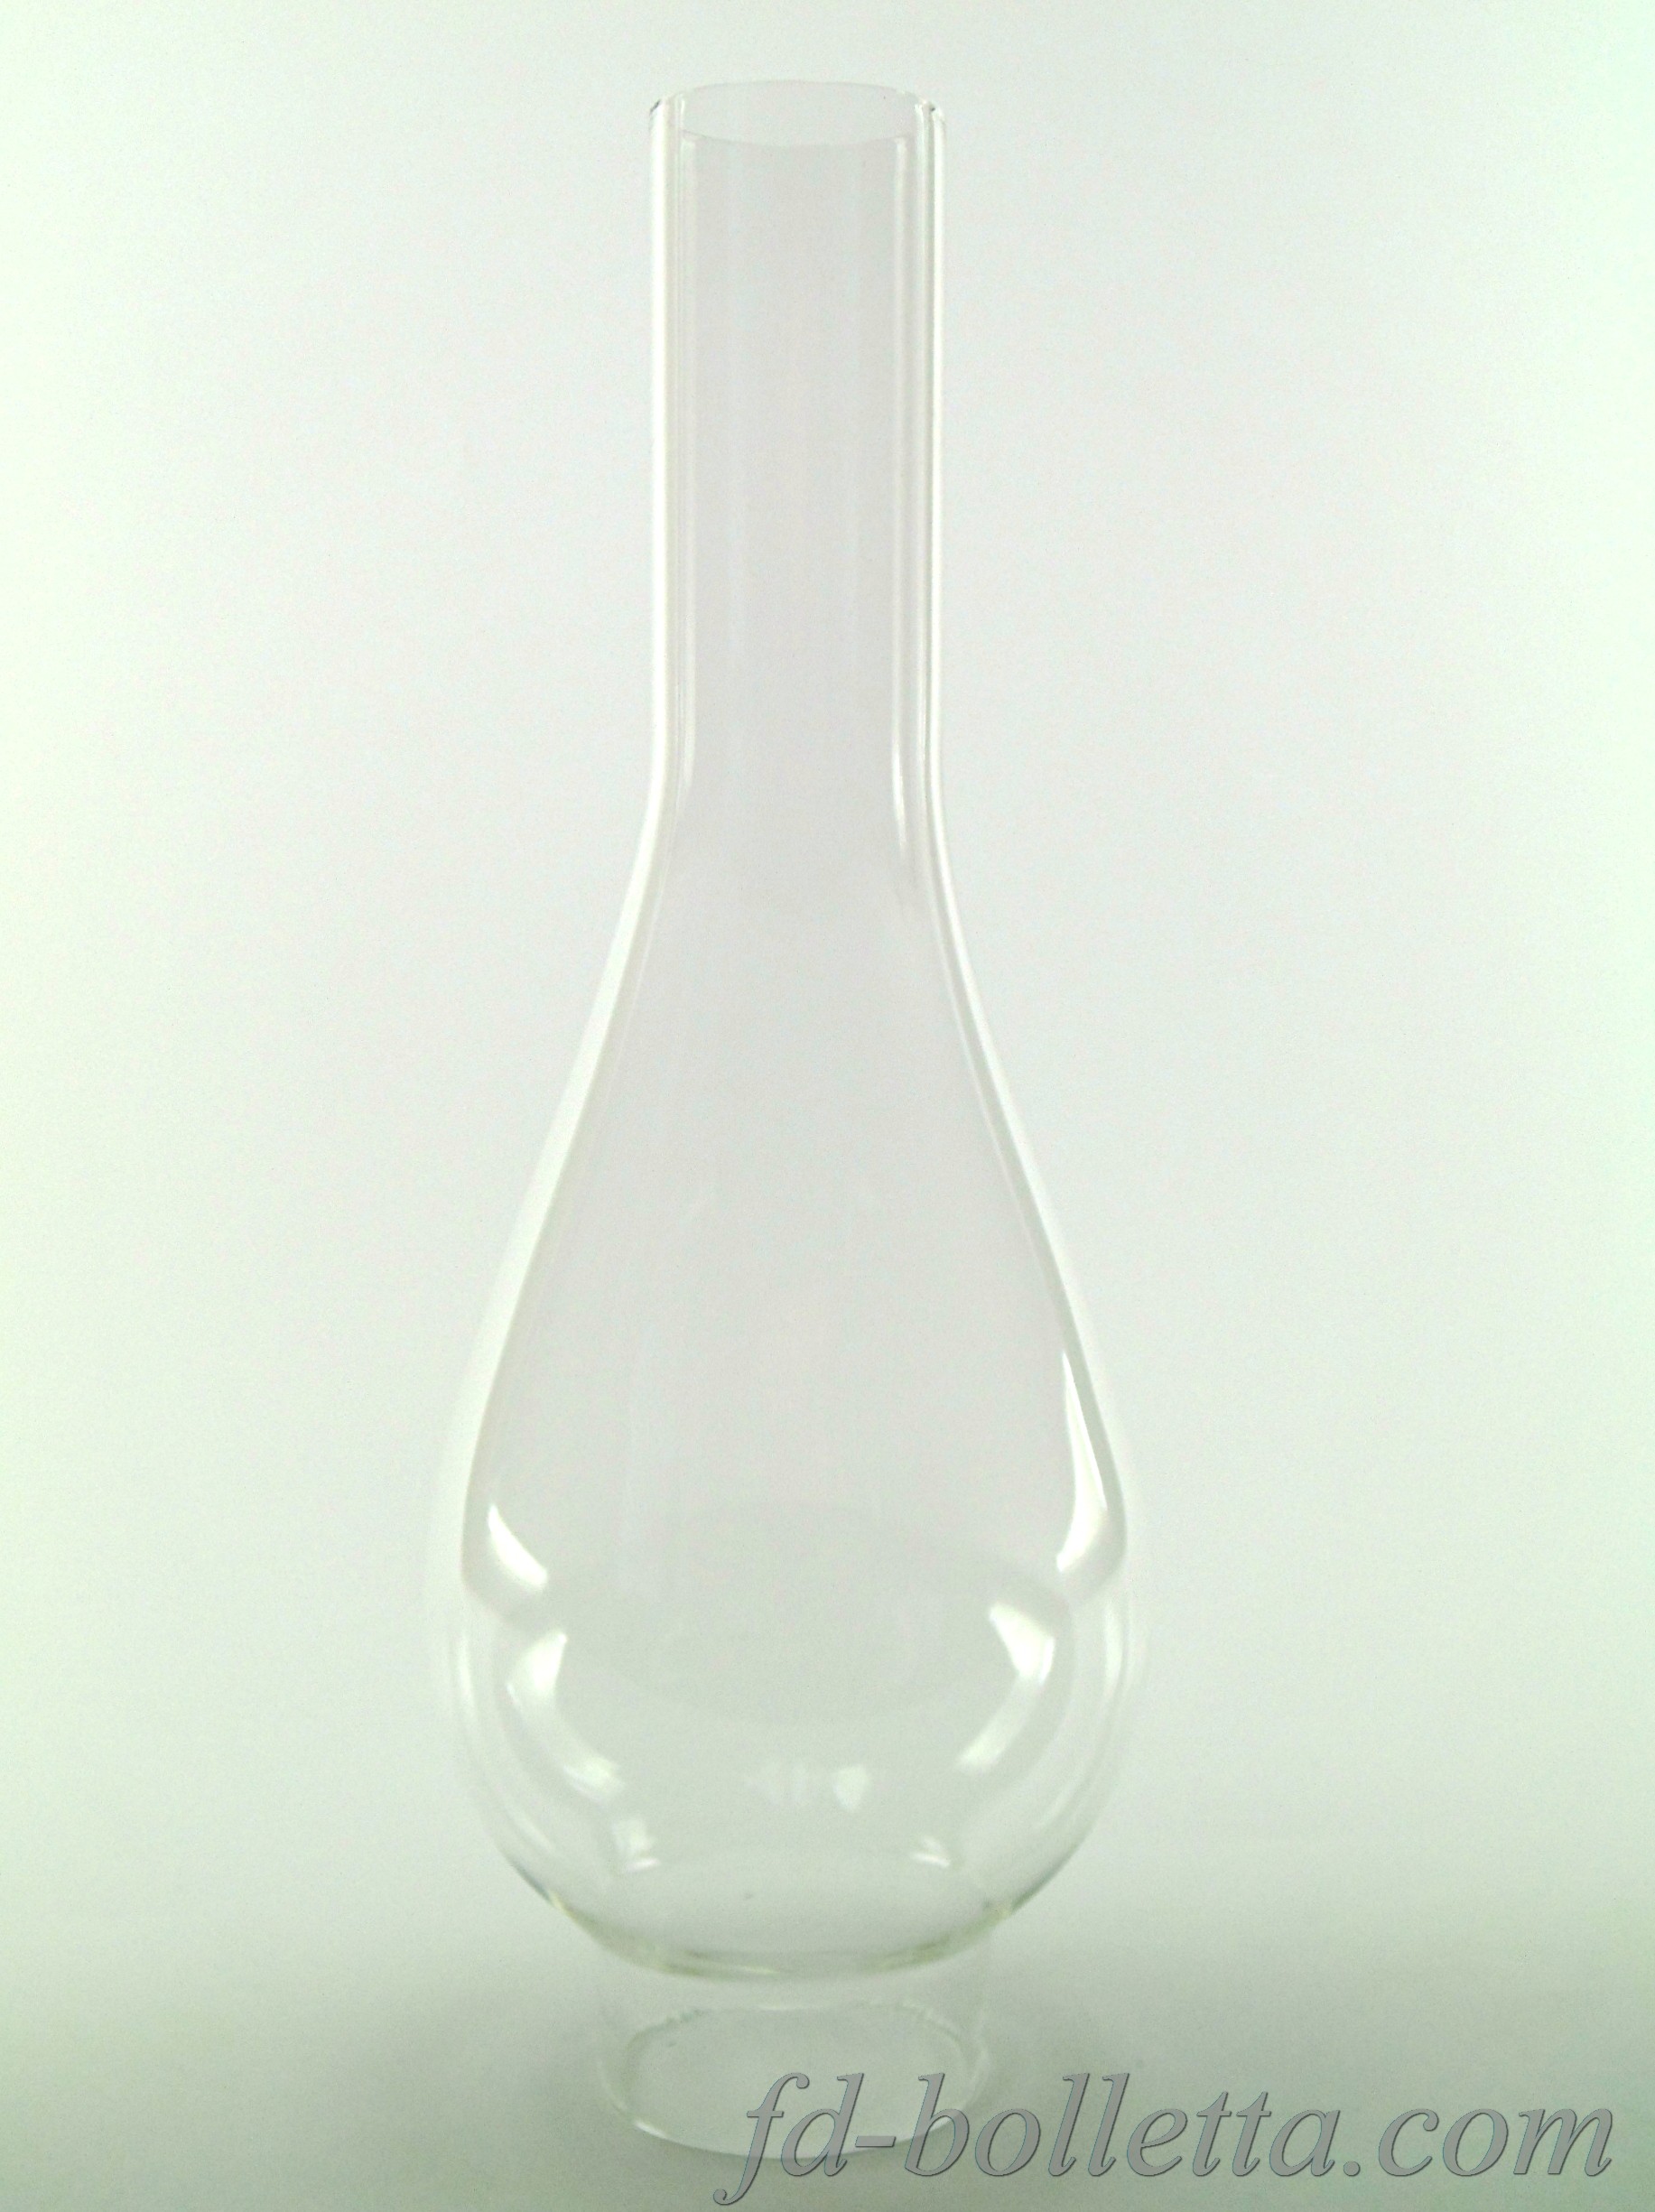 5 cm inf 0164 Lume a petrolio  in vetro n*1 ricambi glass verrè bocce diam 